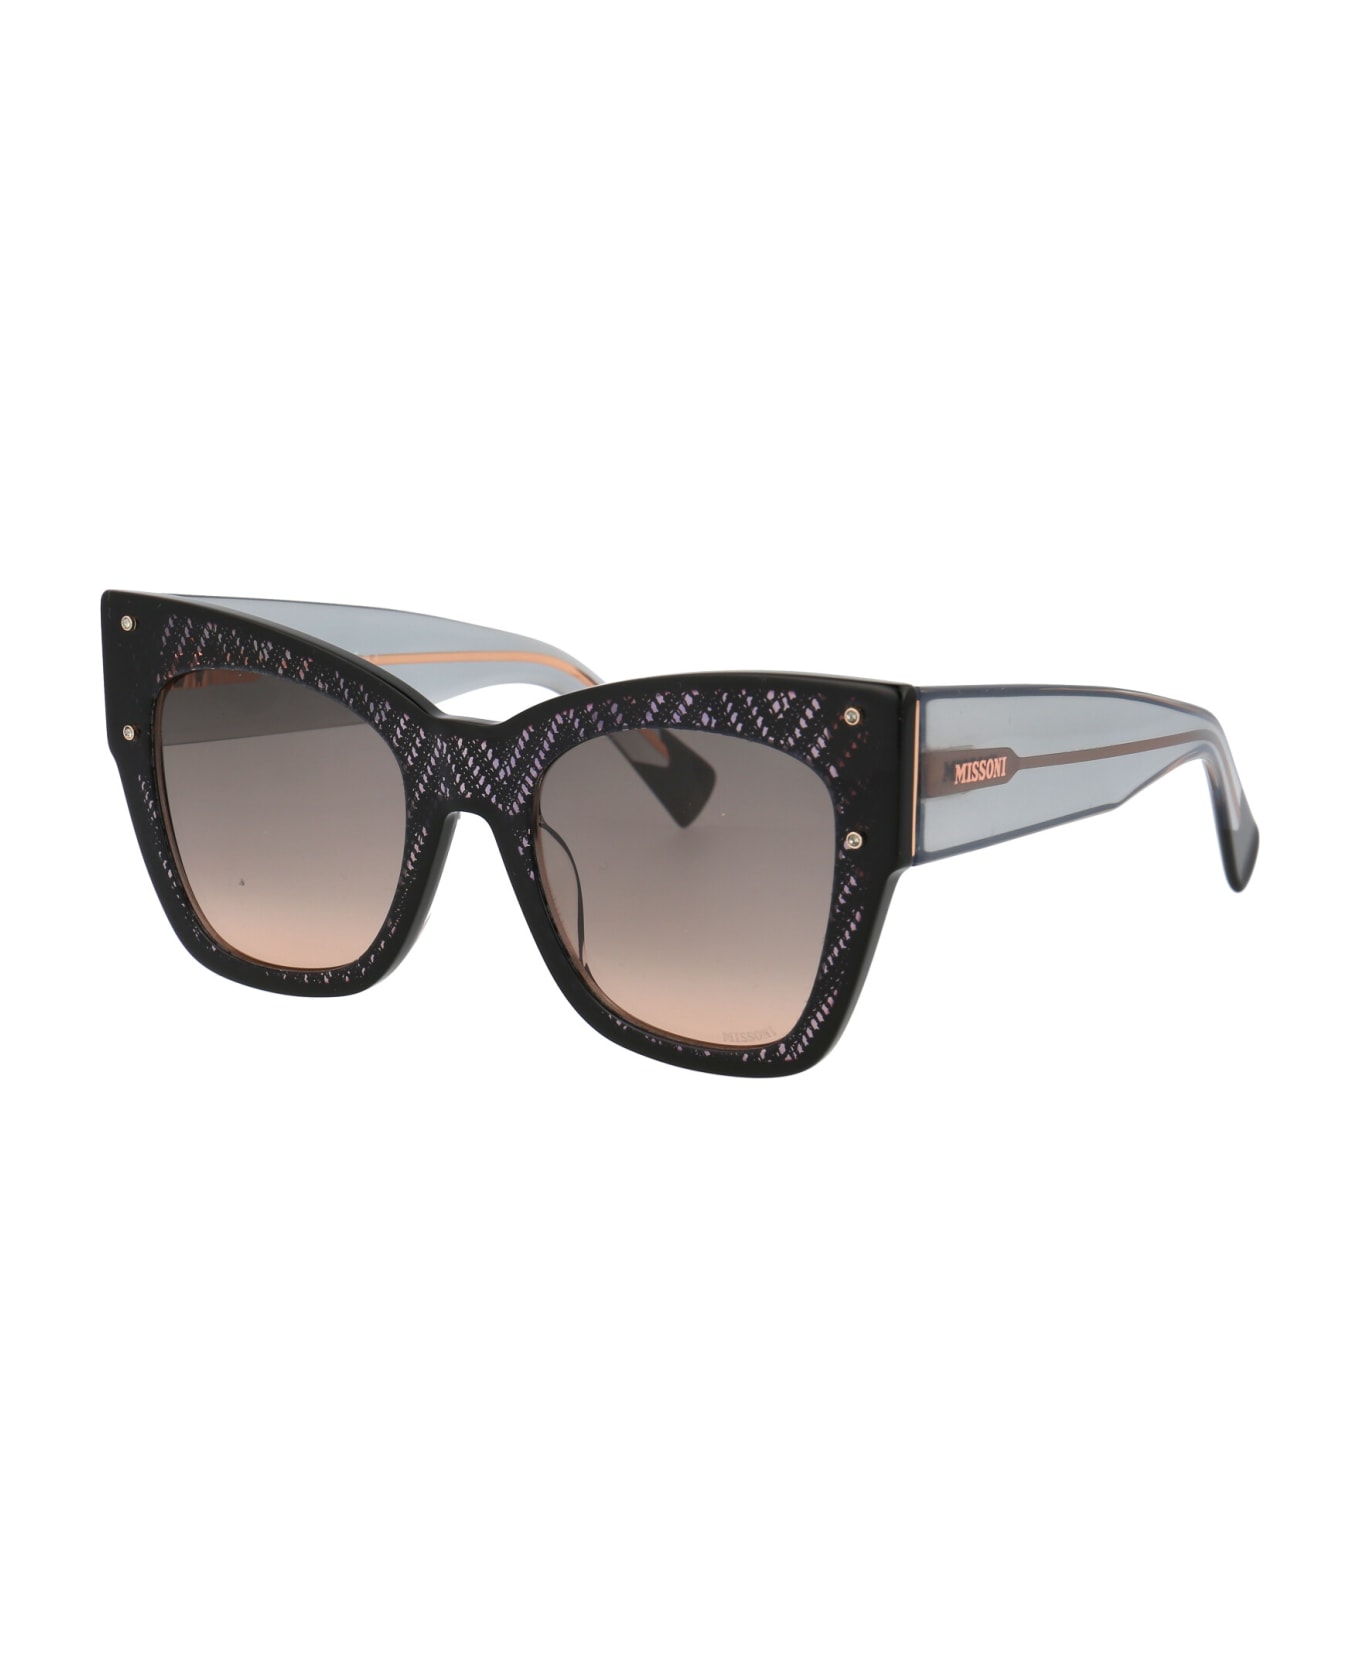 Missoni Mis 0040/s Sunglasses - KDXFF BLACK NUDE